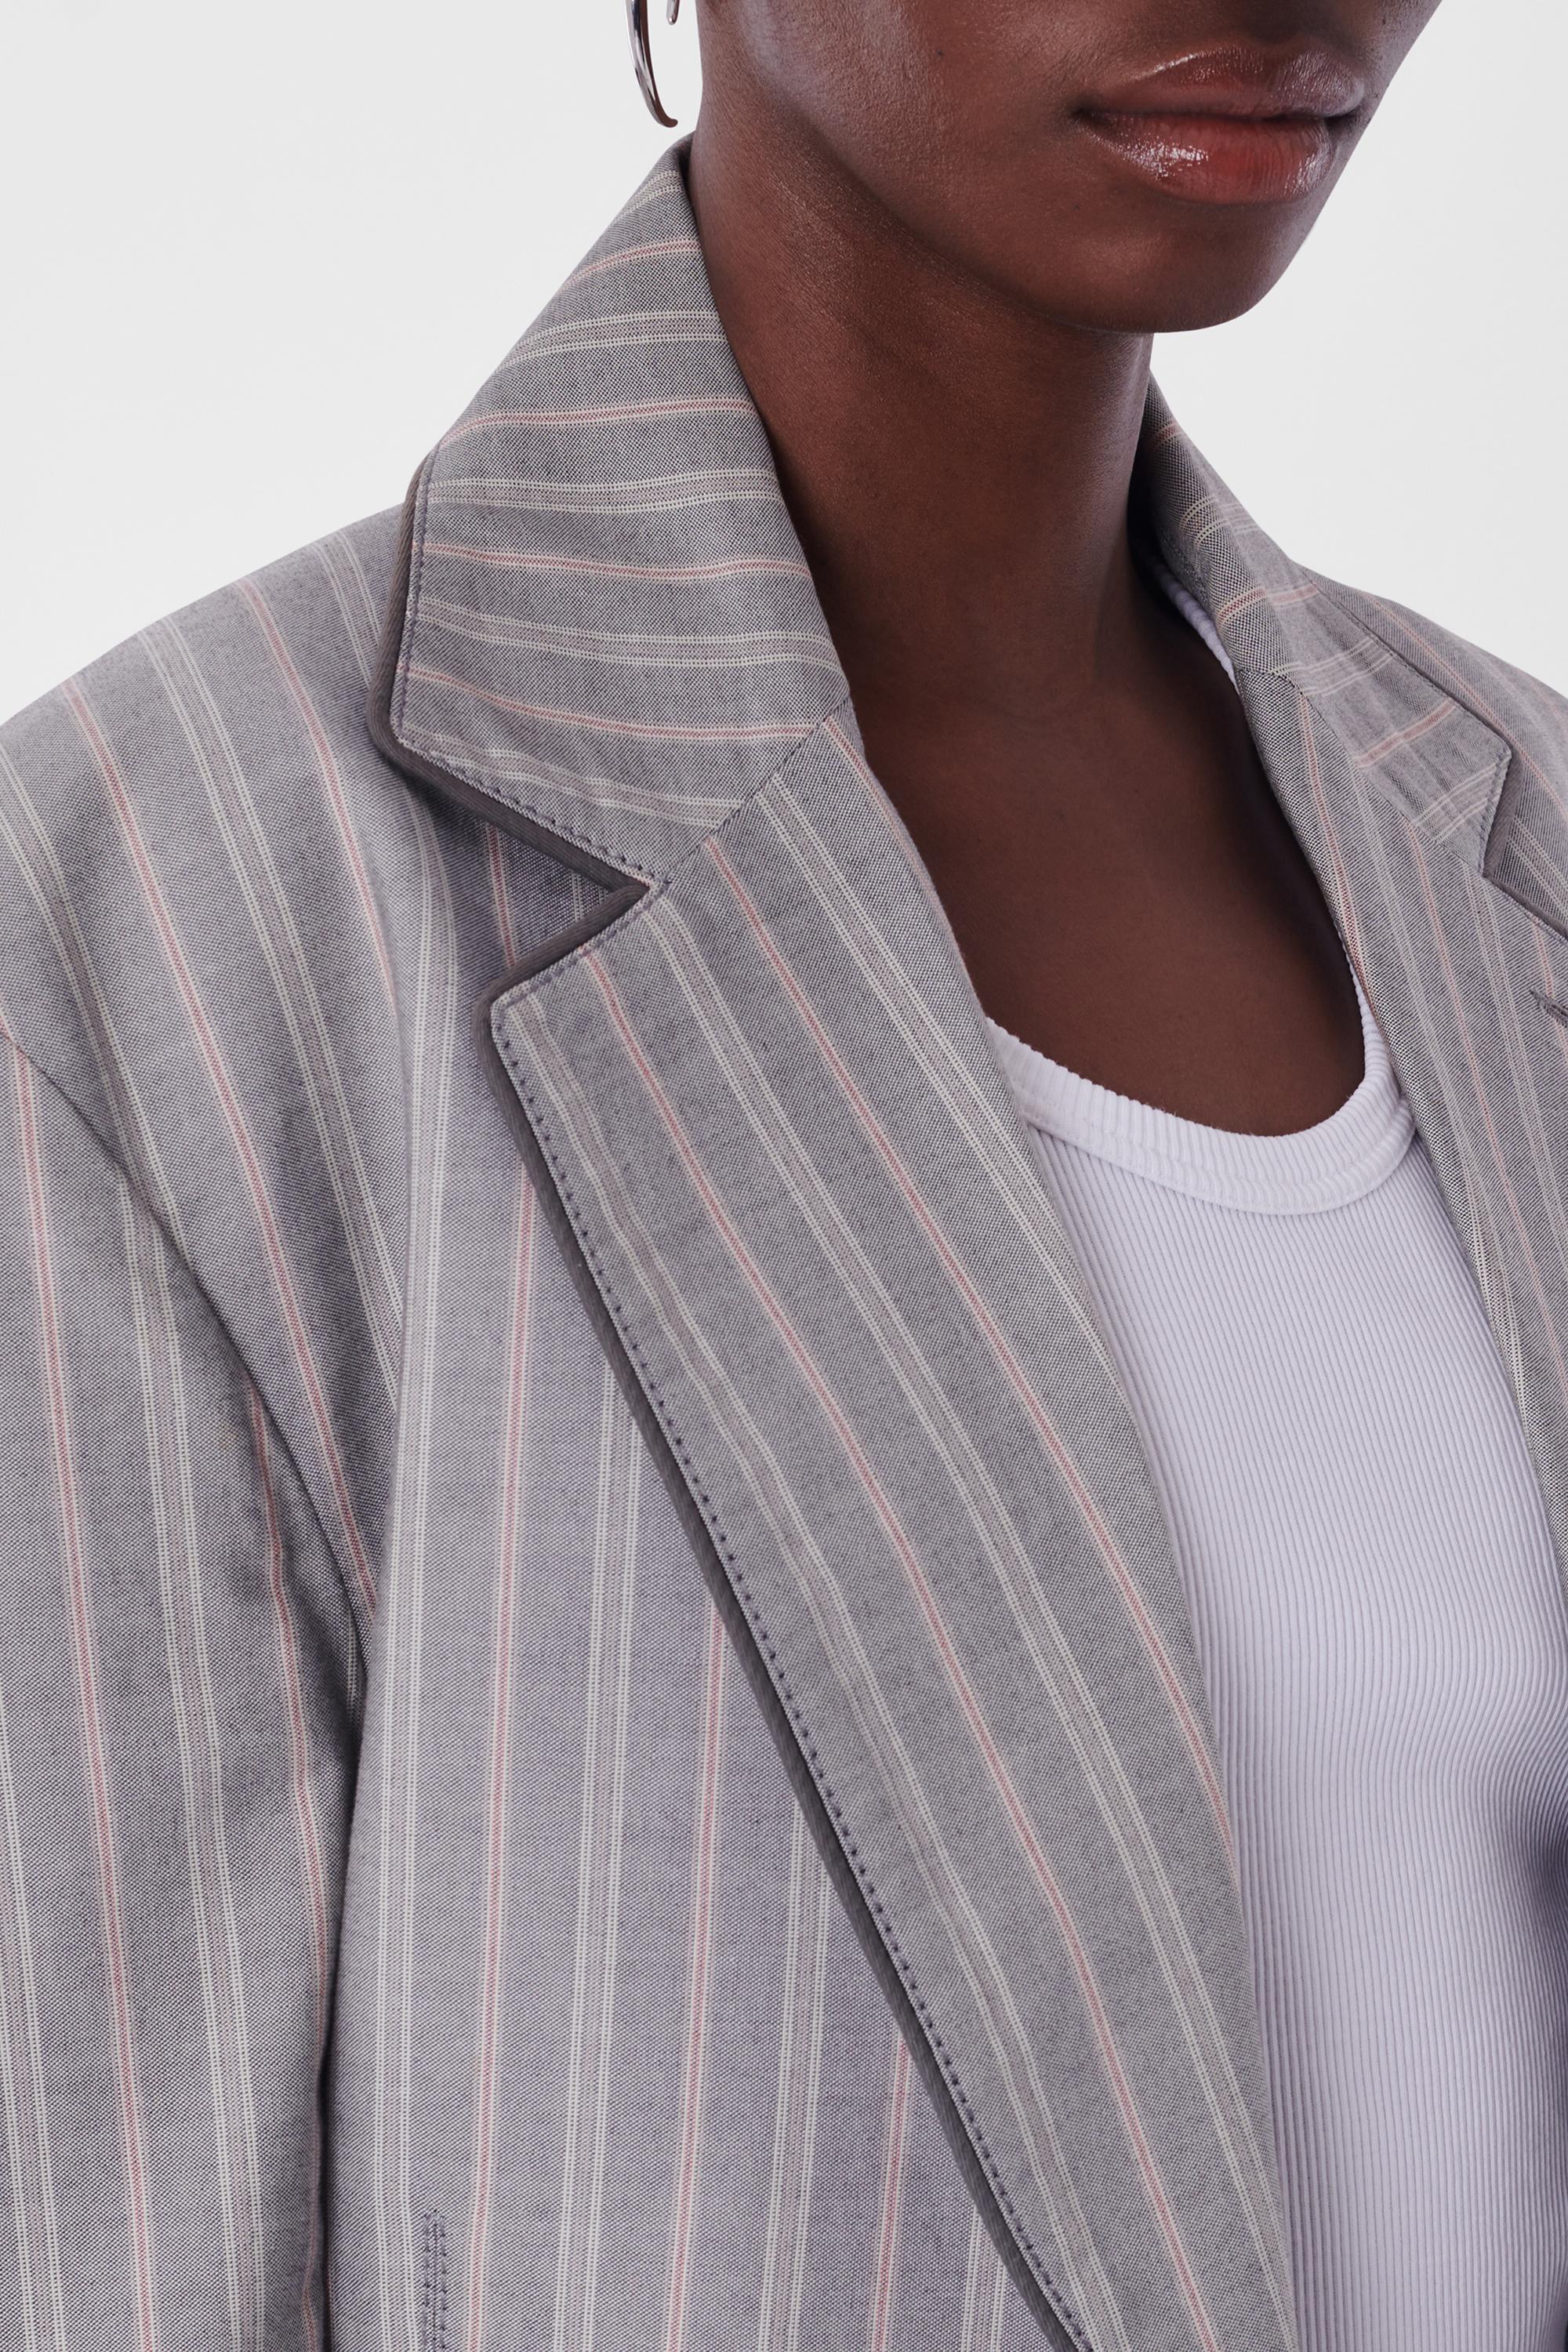 Vivienne Westwood Vintage S/S 1991 Pinstripe grey Suit. Il est doté d'une seule poitrine, d'un passepoil gris le long du revers, de 4 poches sur le devant, d'une coupe ajustée et d'une fermeture à glissière le long de l'entrejambe du pantalon avec